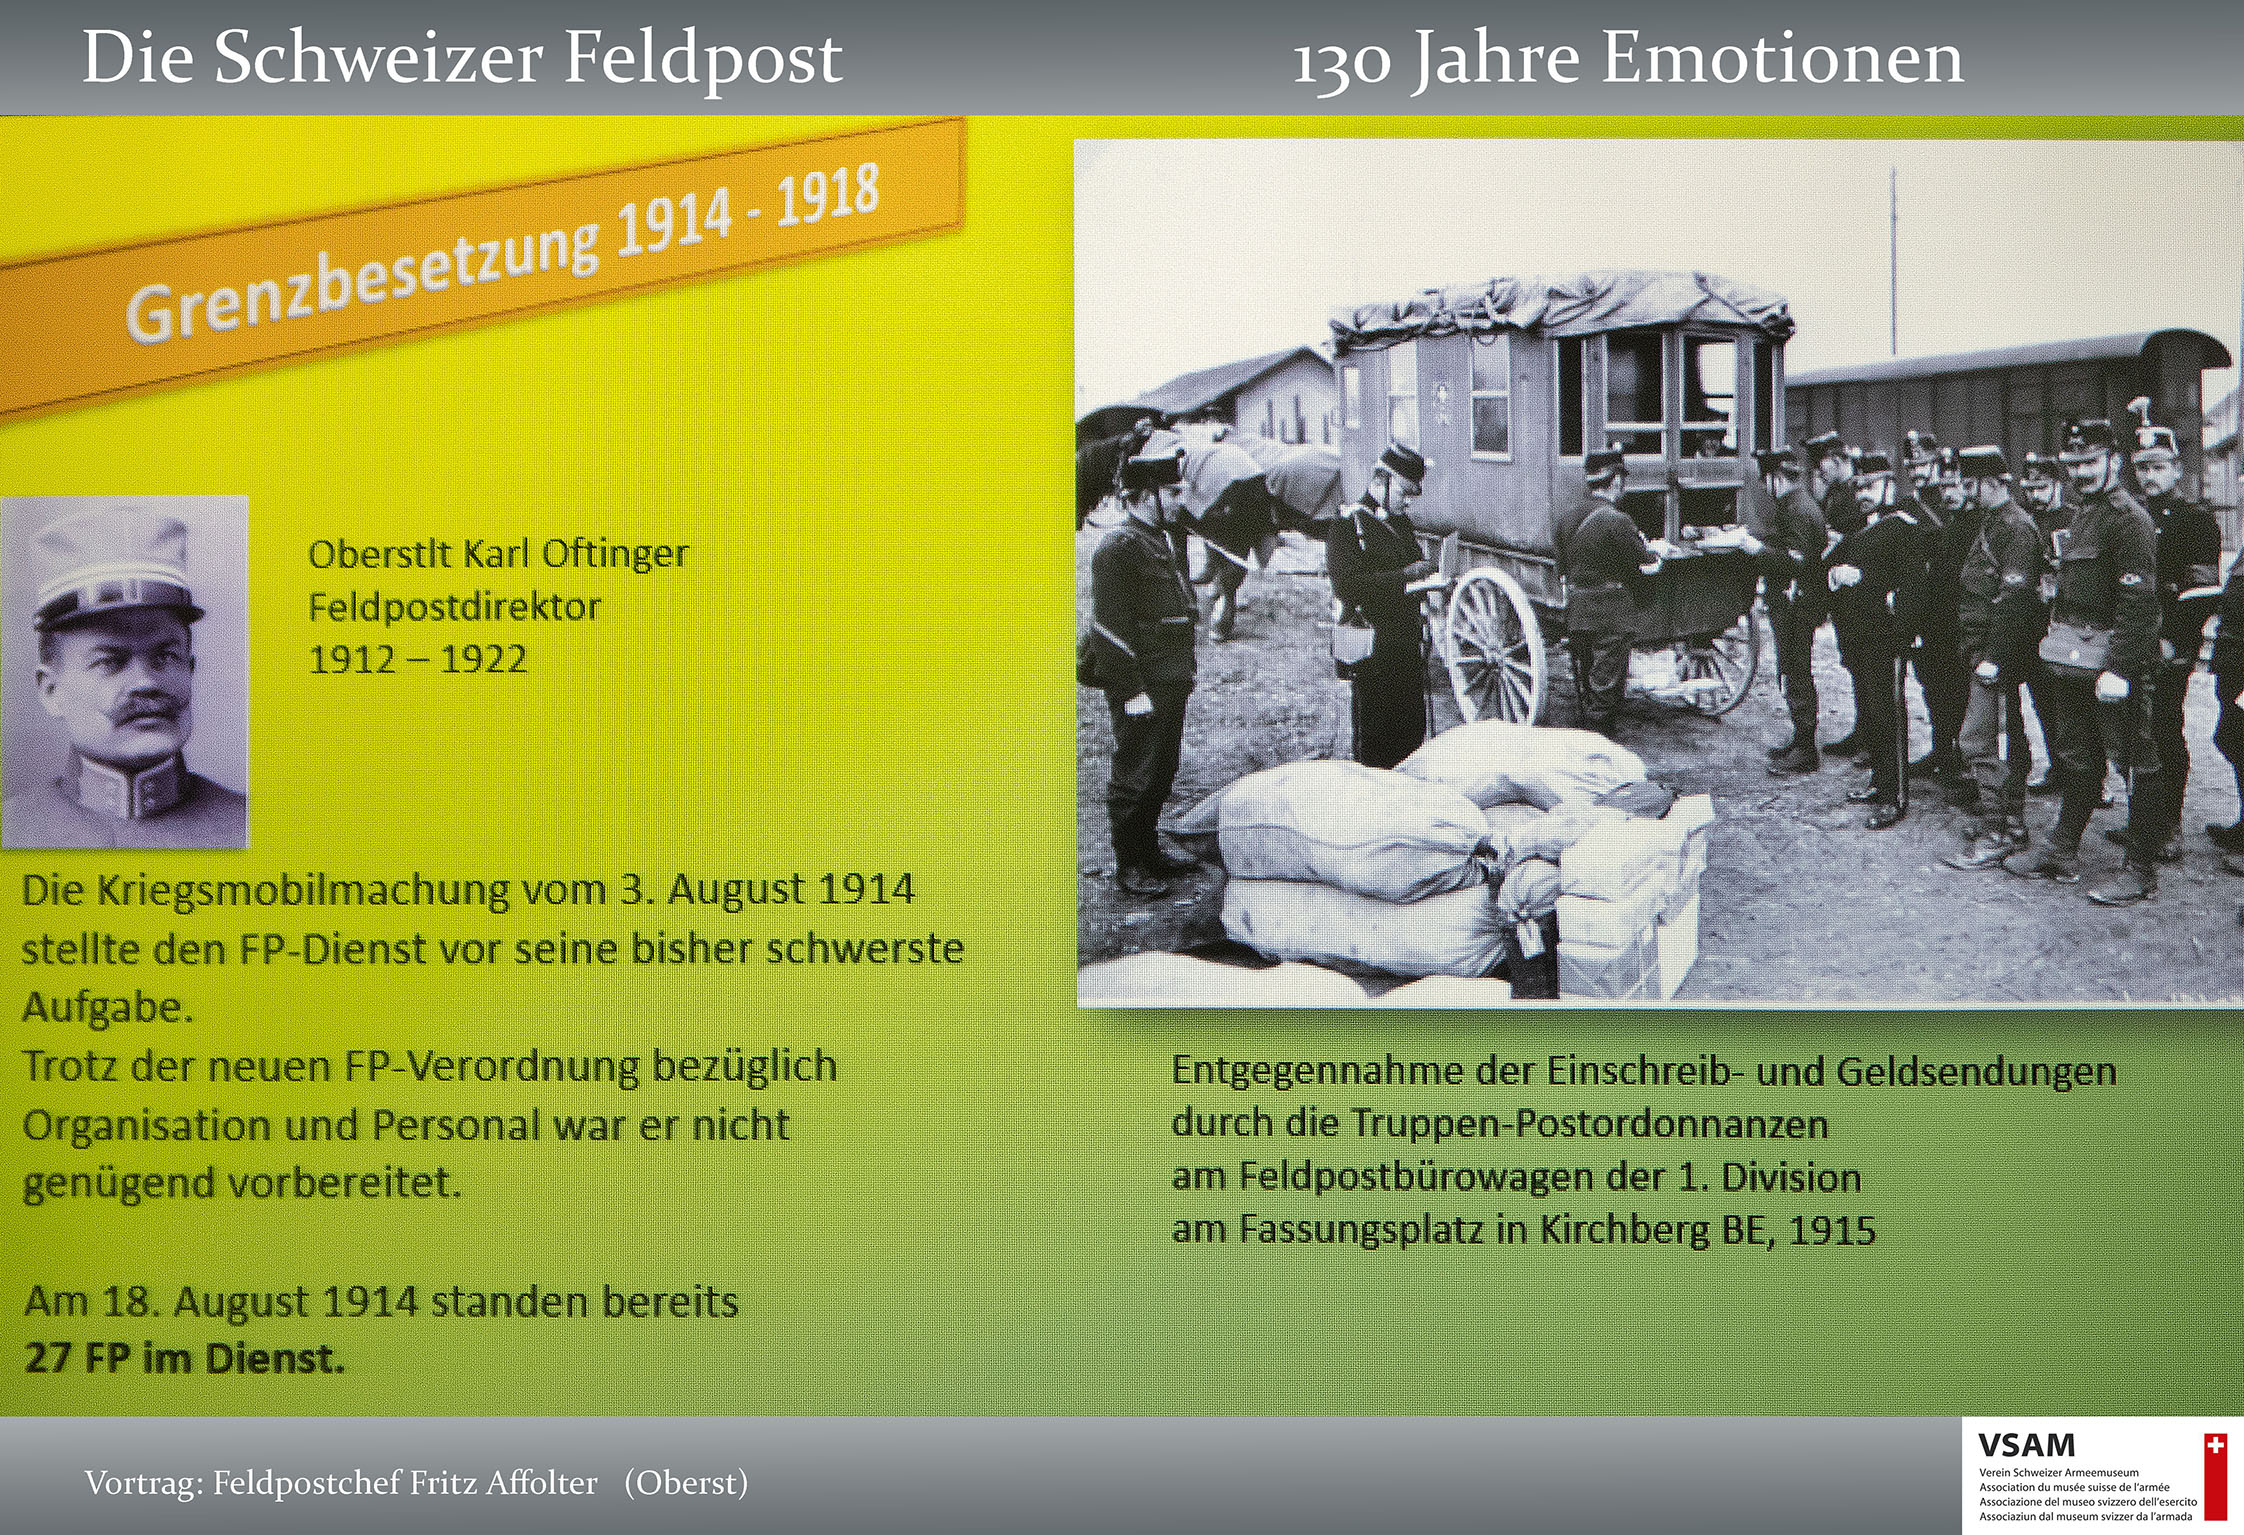 VSAM Vortrag Die Schweizer Feldpost 130 Jahre Emotionen von Frit